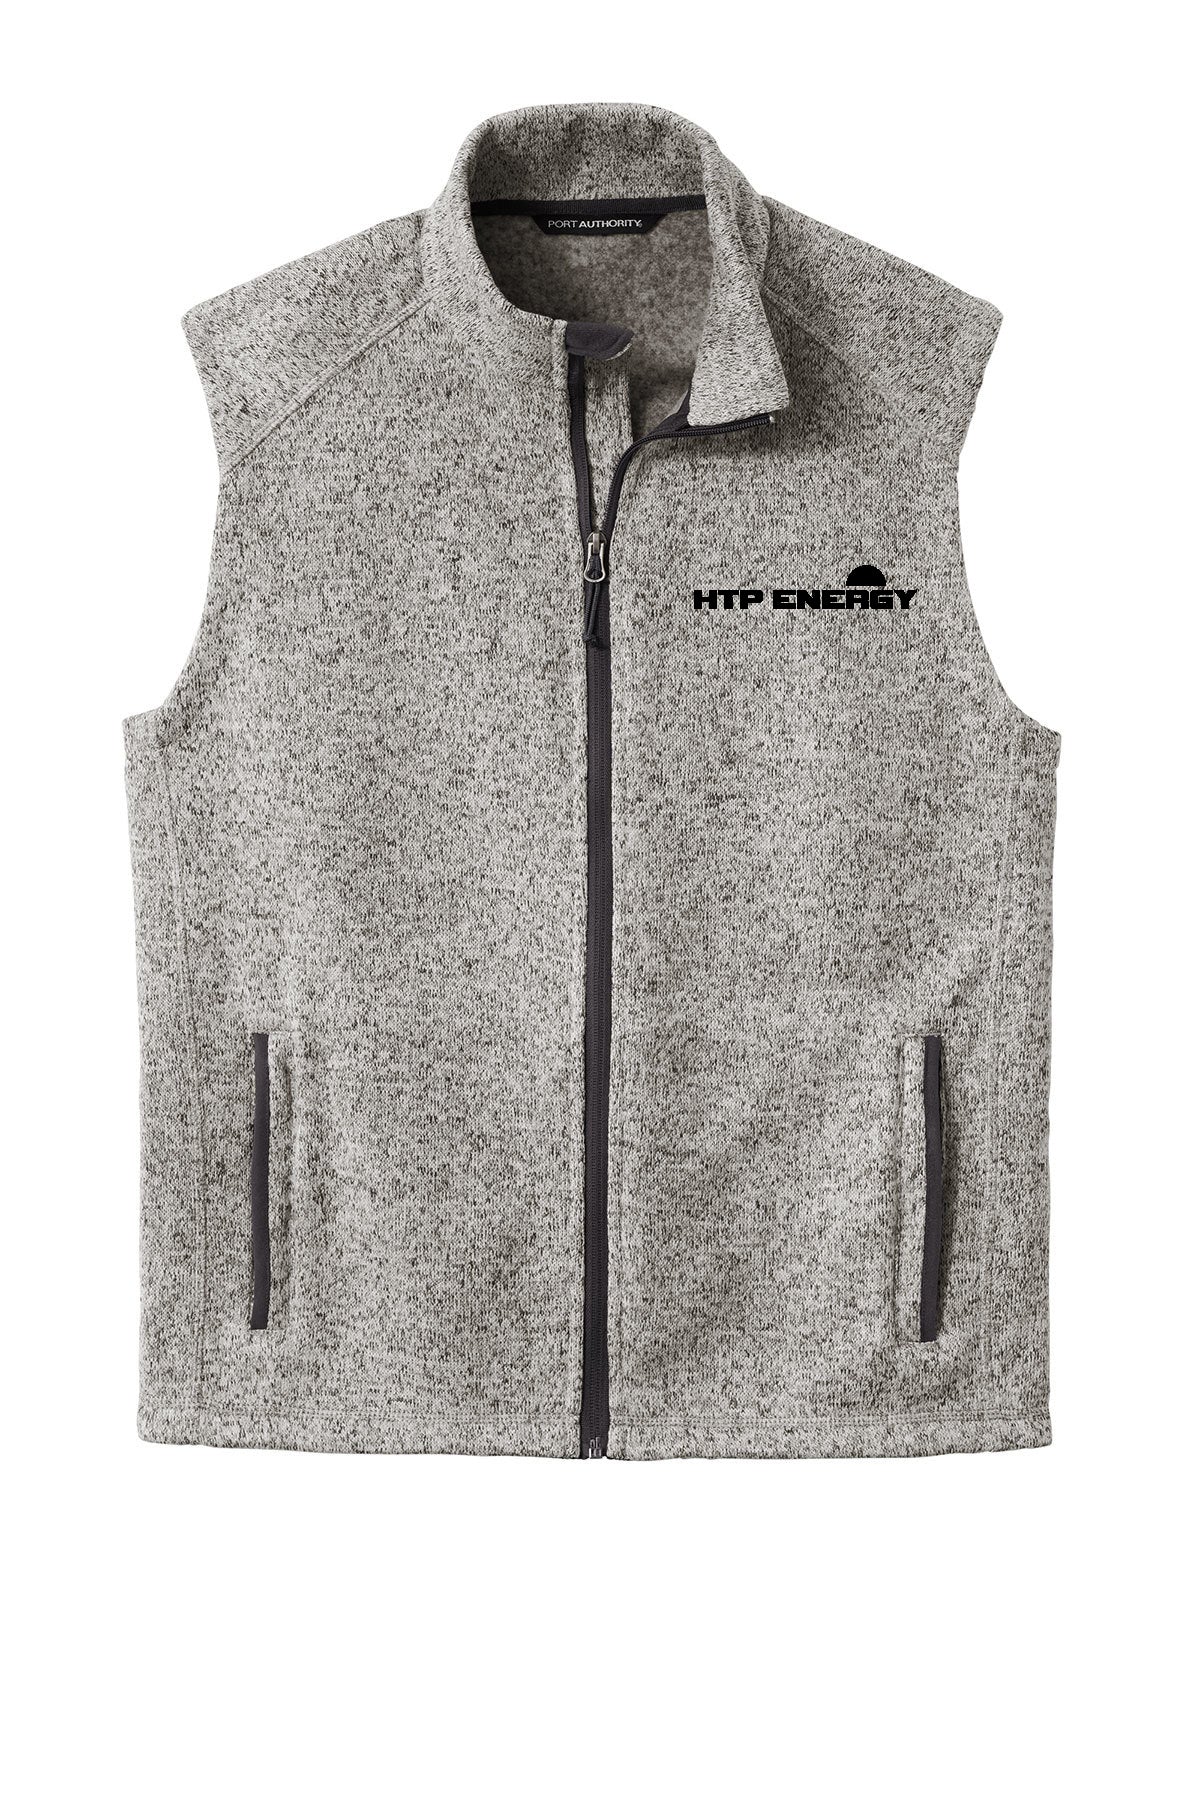 HTP Energy Sweater Fleece Vest